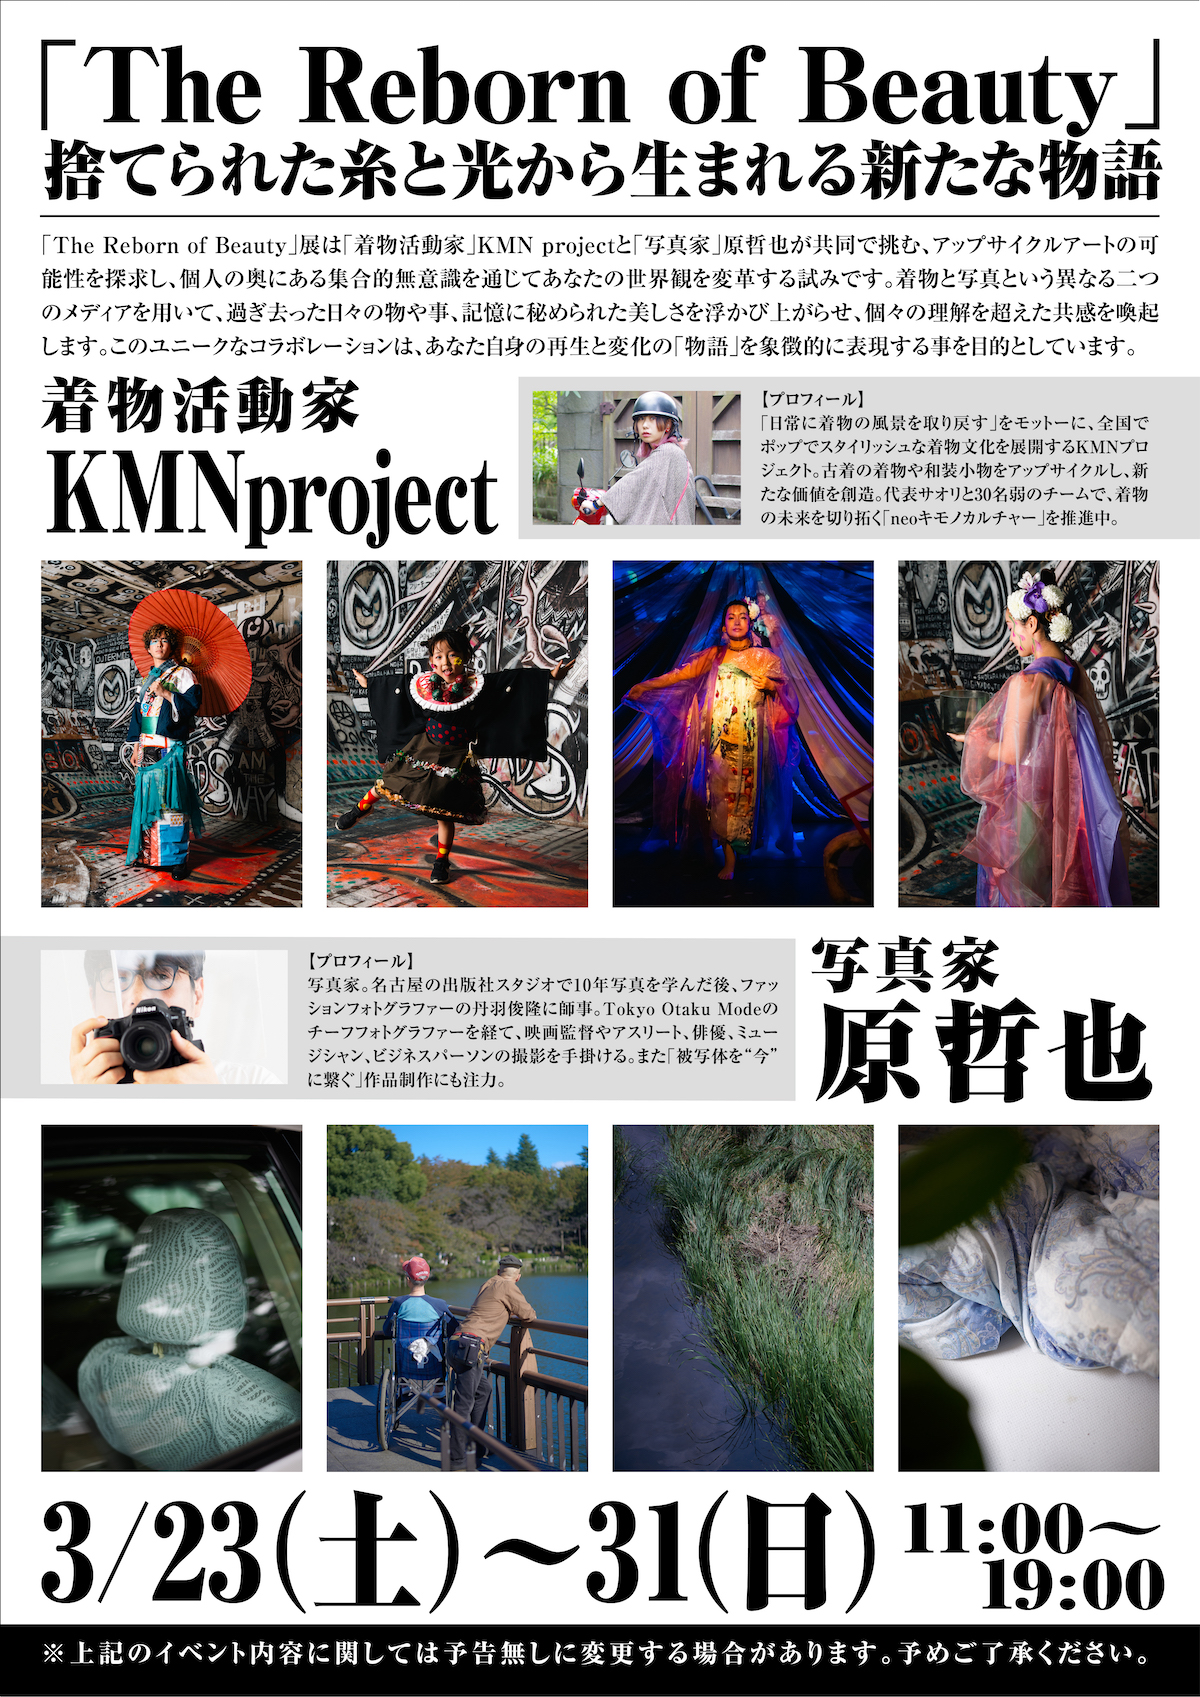 着物活動家『KMN project』と写真家の『原哲也』さんによる展示会『The Reborn of Beauty』